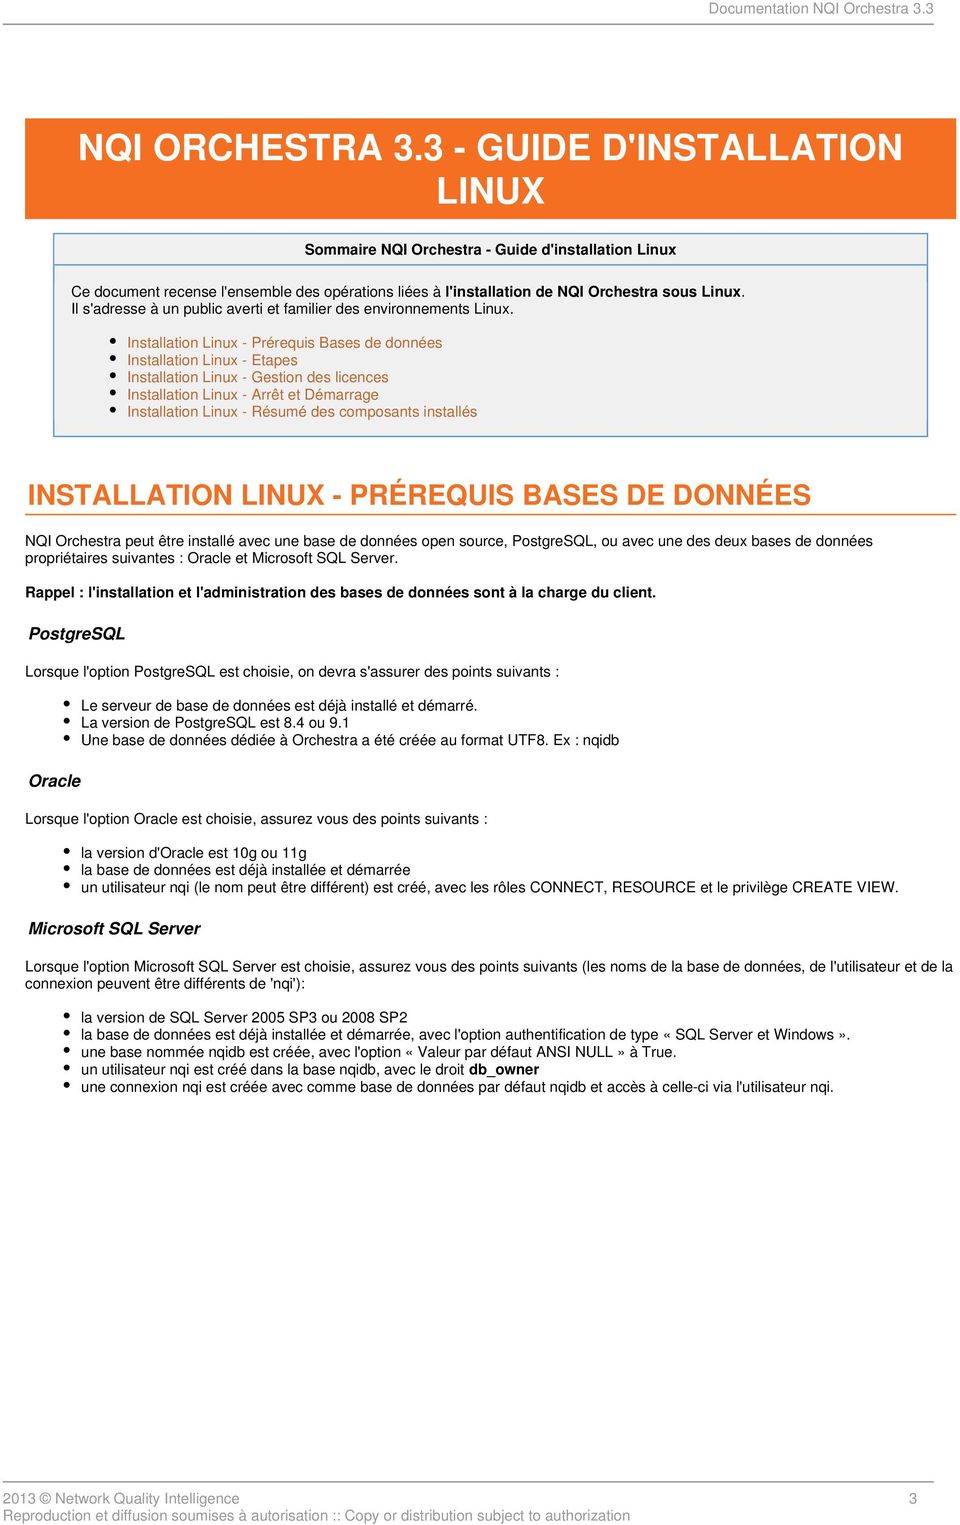 Installation Linux - Prérequis Bases de données Installation Linux - Etapes Installation Linux - Gestion des licences Installation Linux - Arrêt et Démarrage Installation Linux - Résumé des